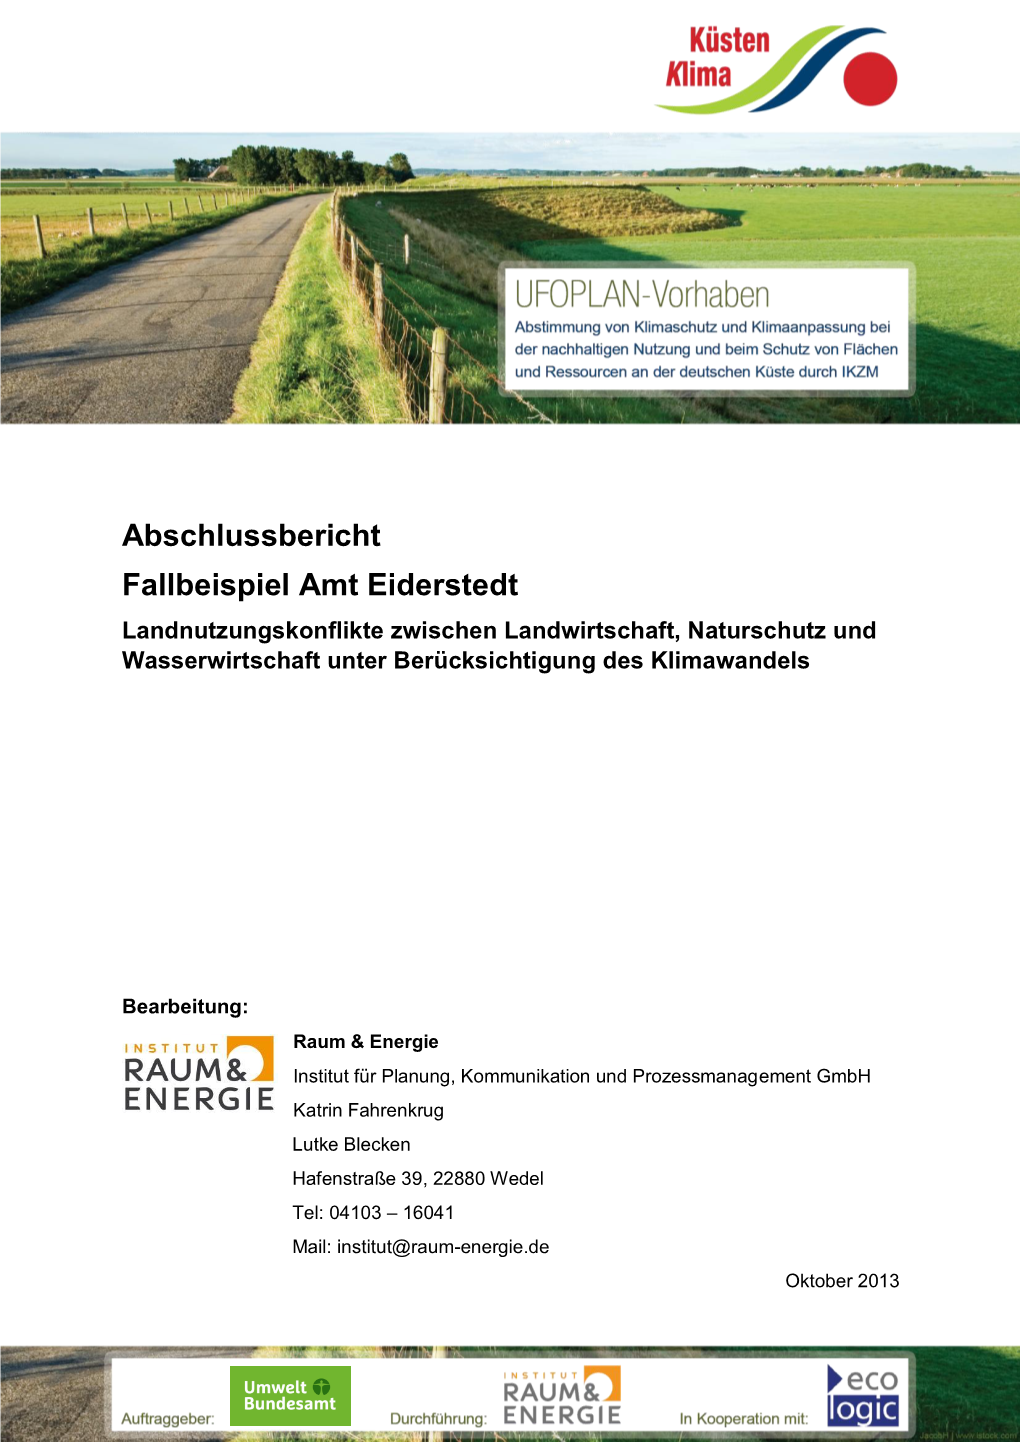 Fallbeispiel Amt Eiderstedt Landnutzungskonflikte Zwischen Landwirtschaft, Naturschutz Und Wasserwirtschaft Unter Berücksichtigung Des Klimawandels